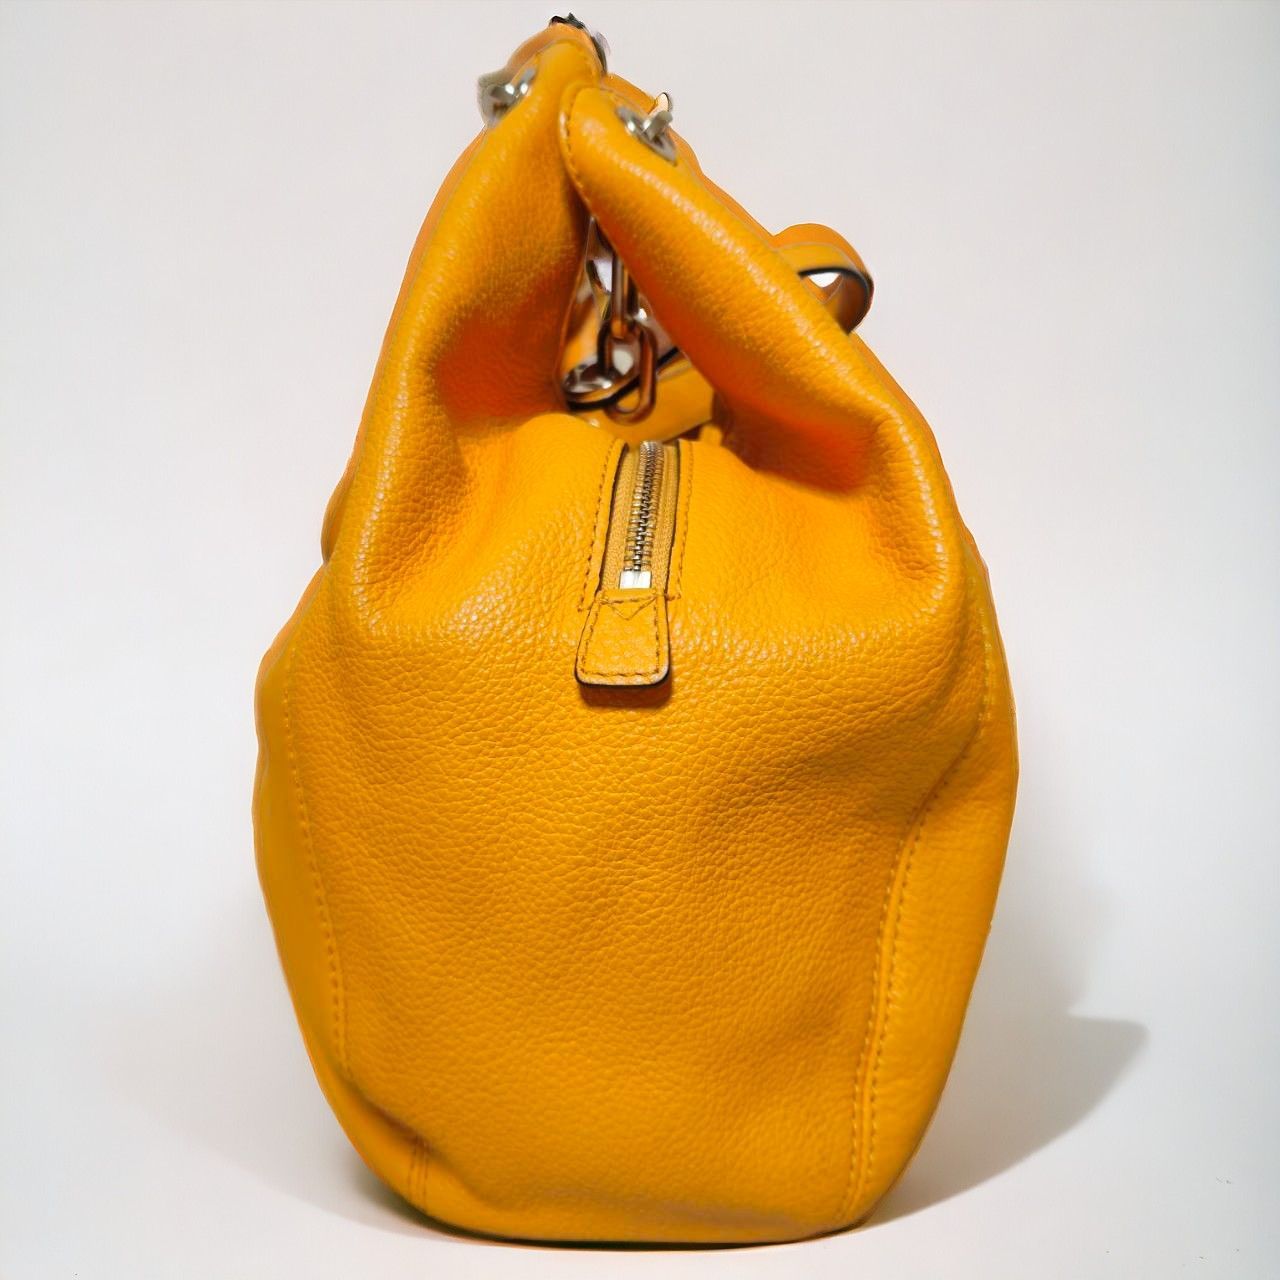 マイケルコース フルトンチェーン ハンドバッグ トートバッグ レザー オレンジ Michael Kors Fulton Chain Handbag  Tote Bag Leather Orange